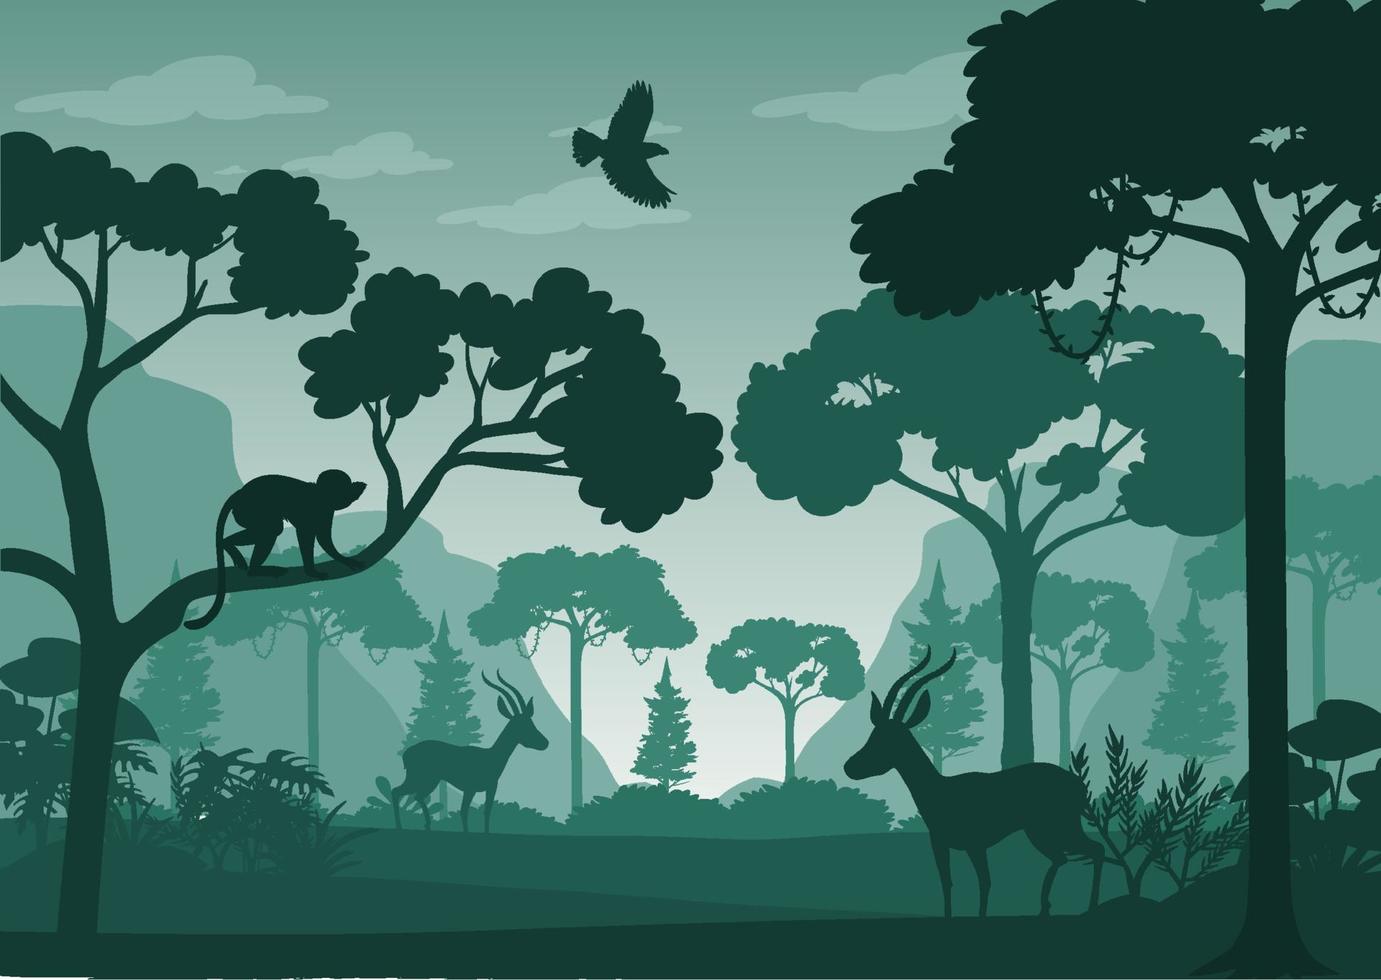 sfondo del paesaggio forestale silhouette vettore